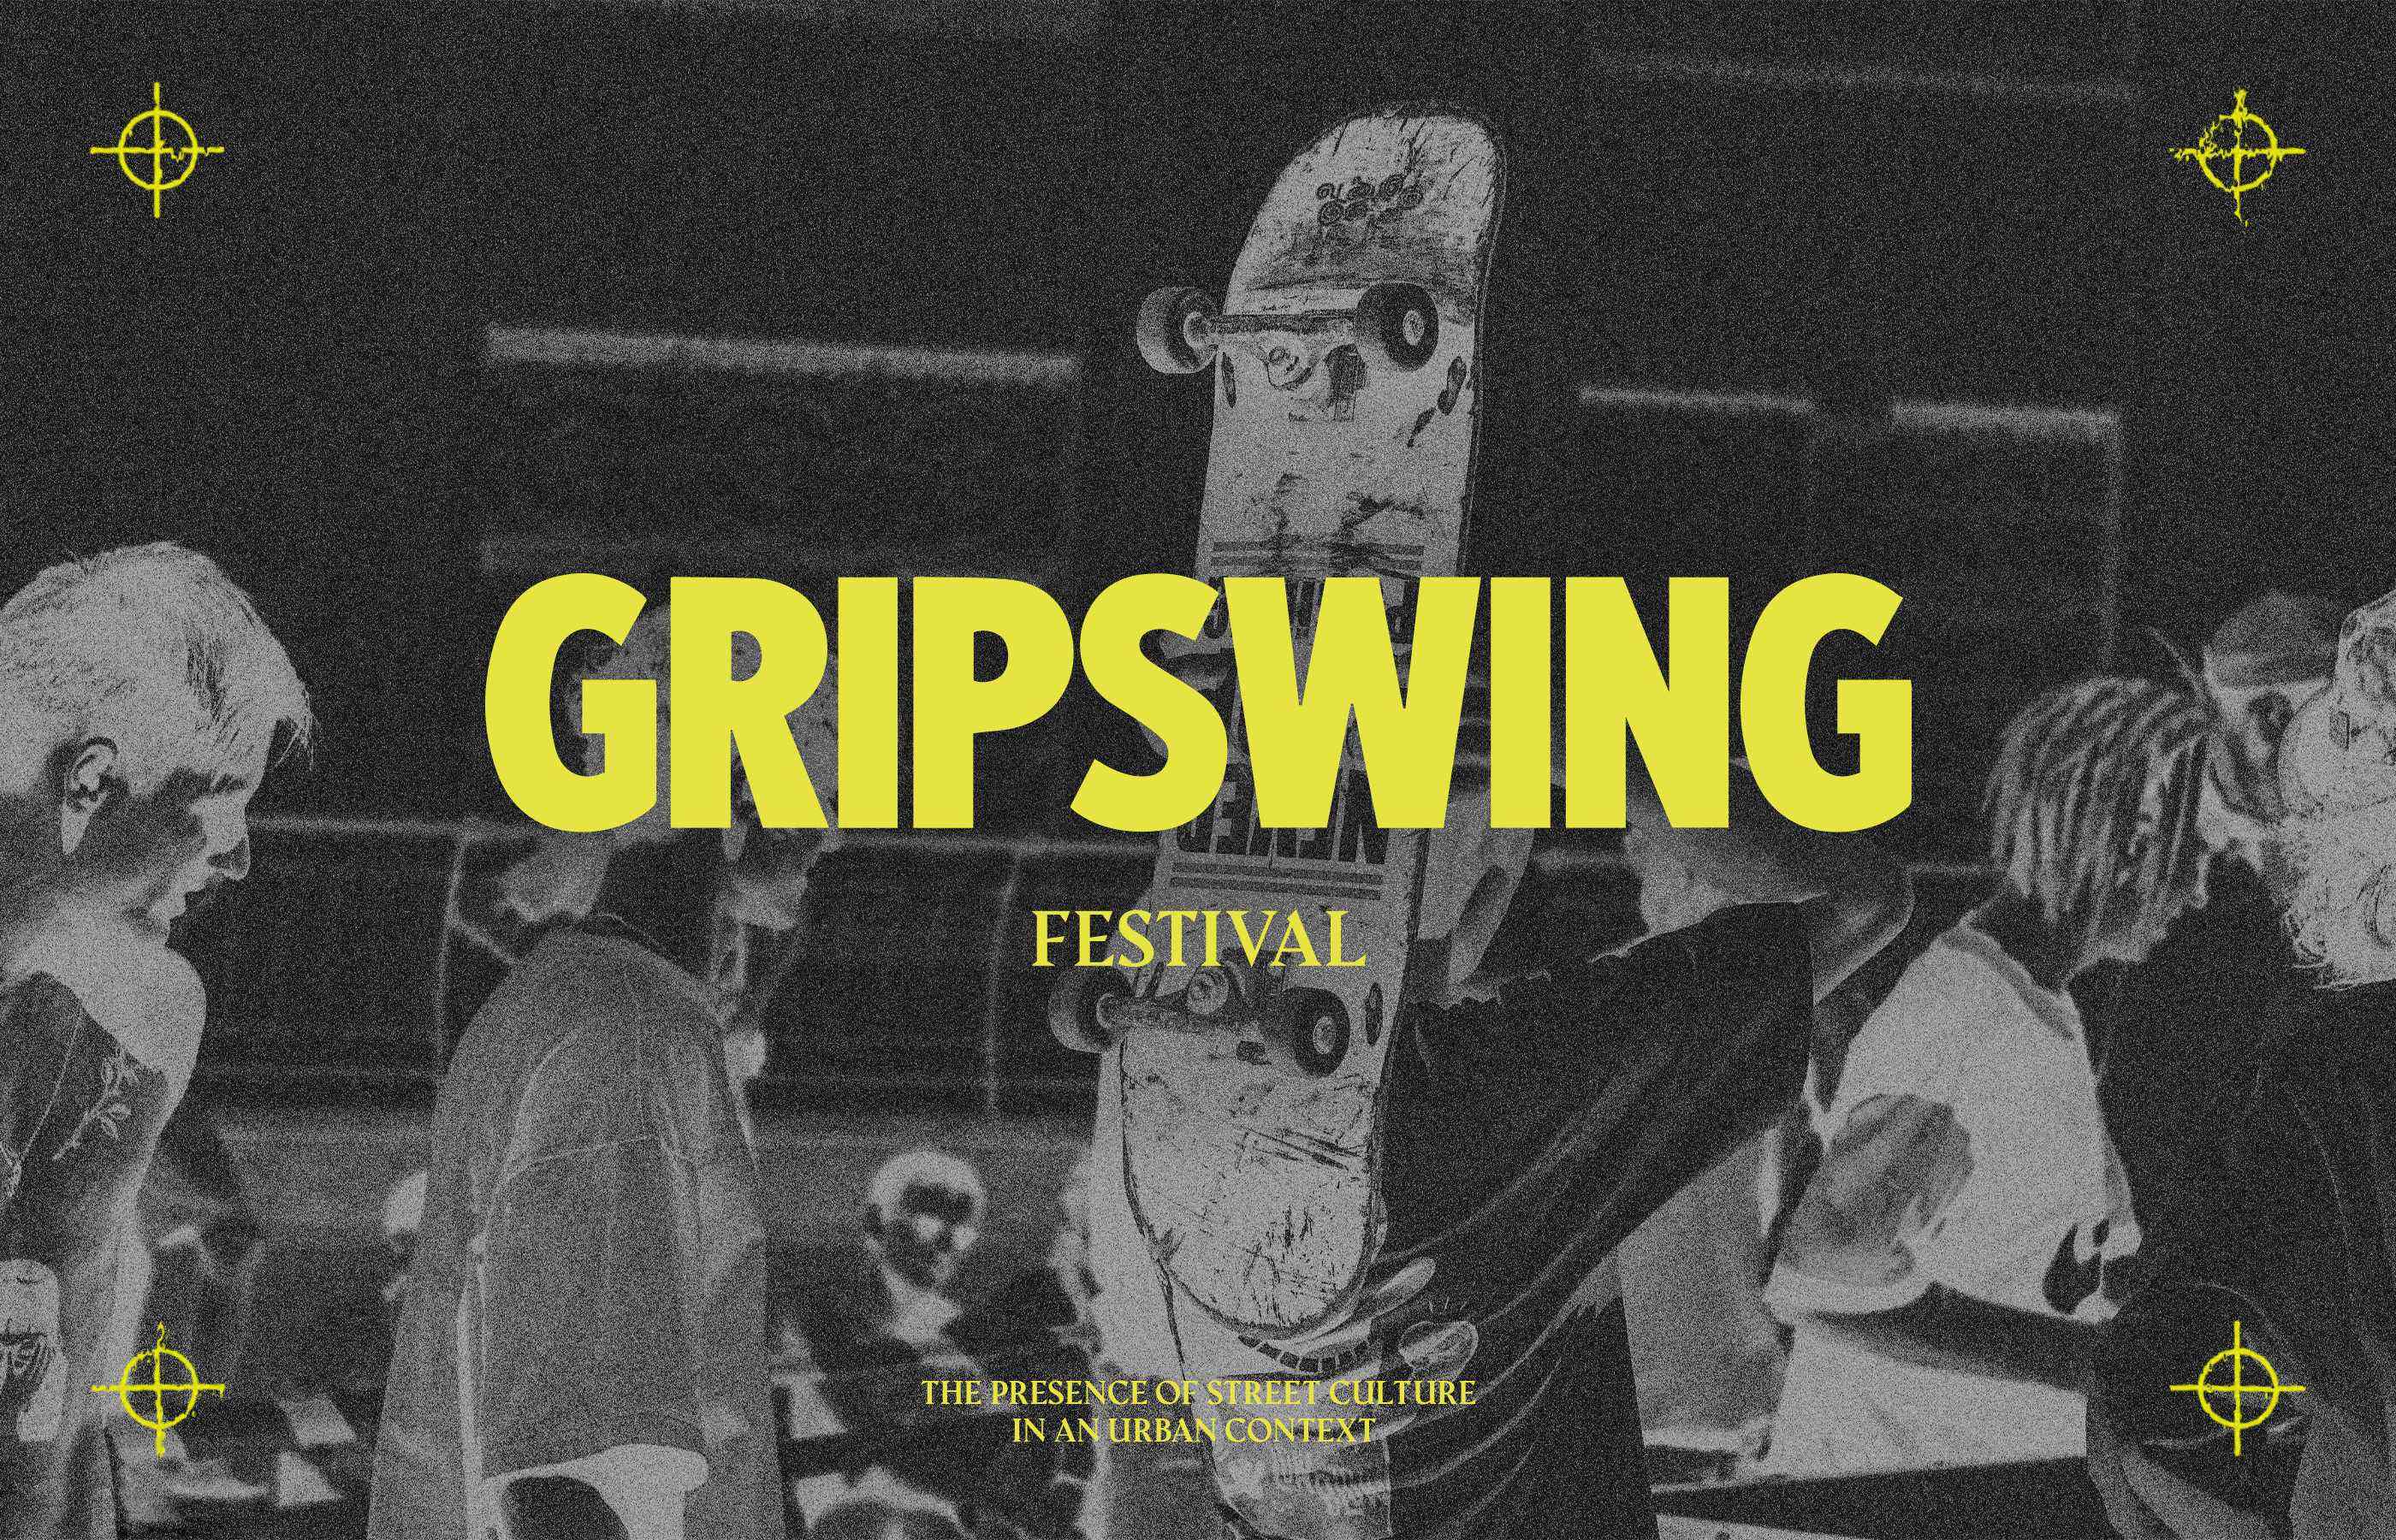 Gripswing Festival Branding